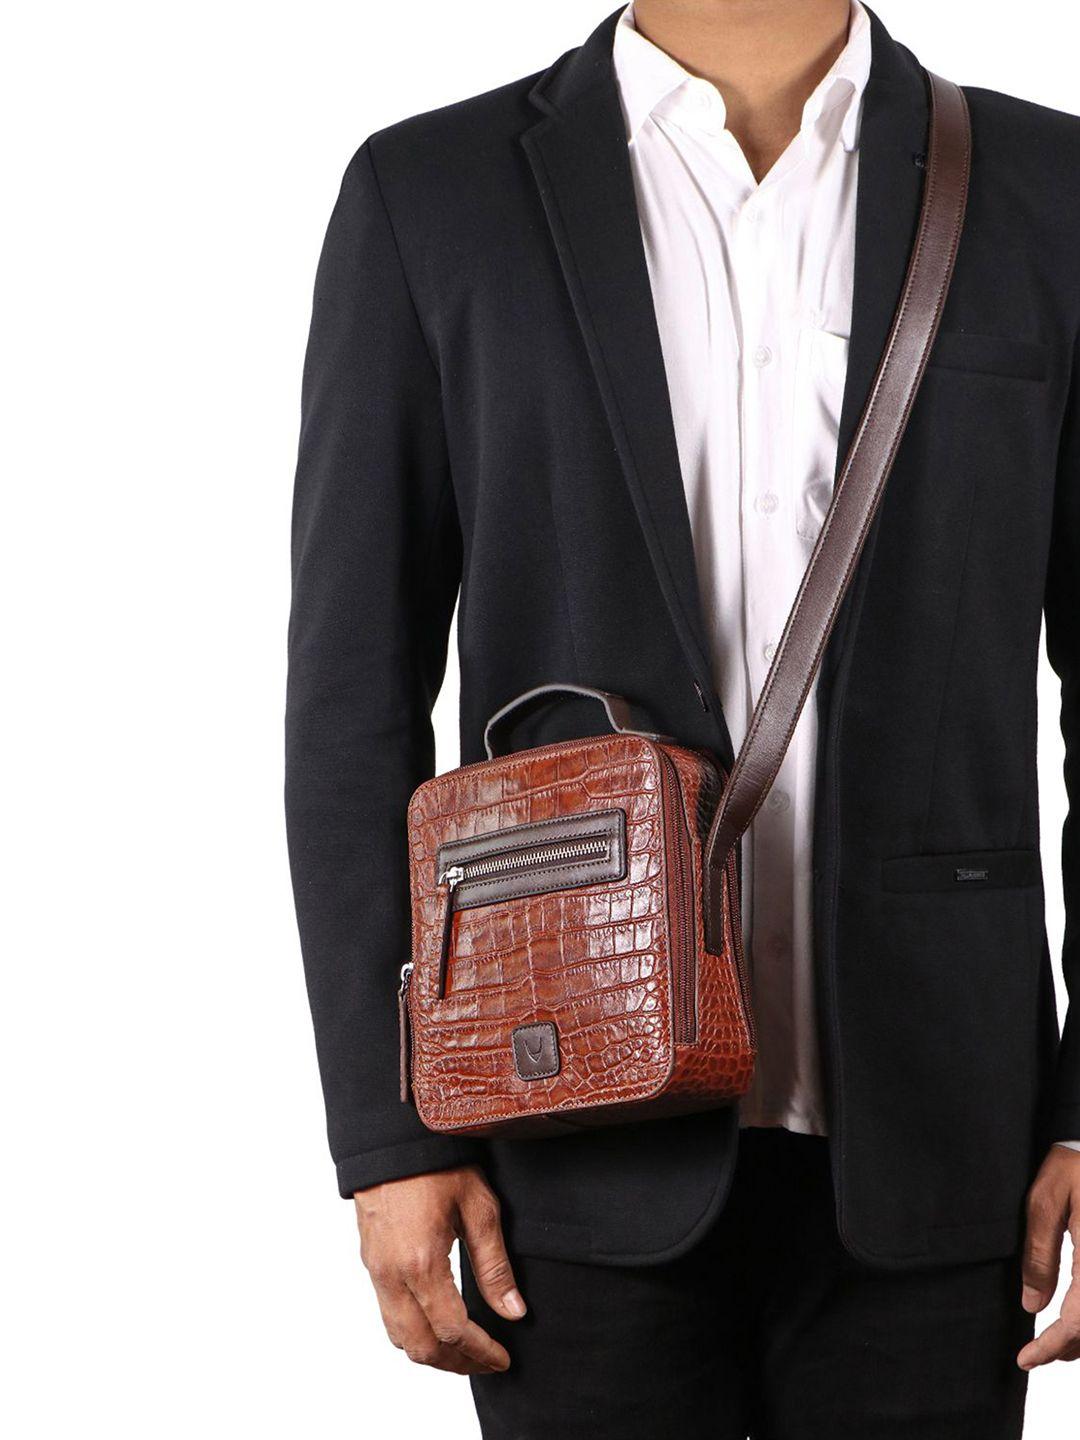 hidesign men textured leather messenger bag